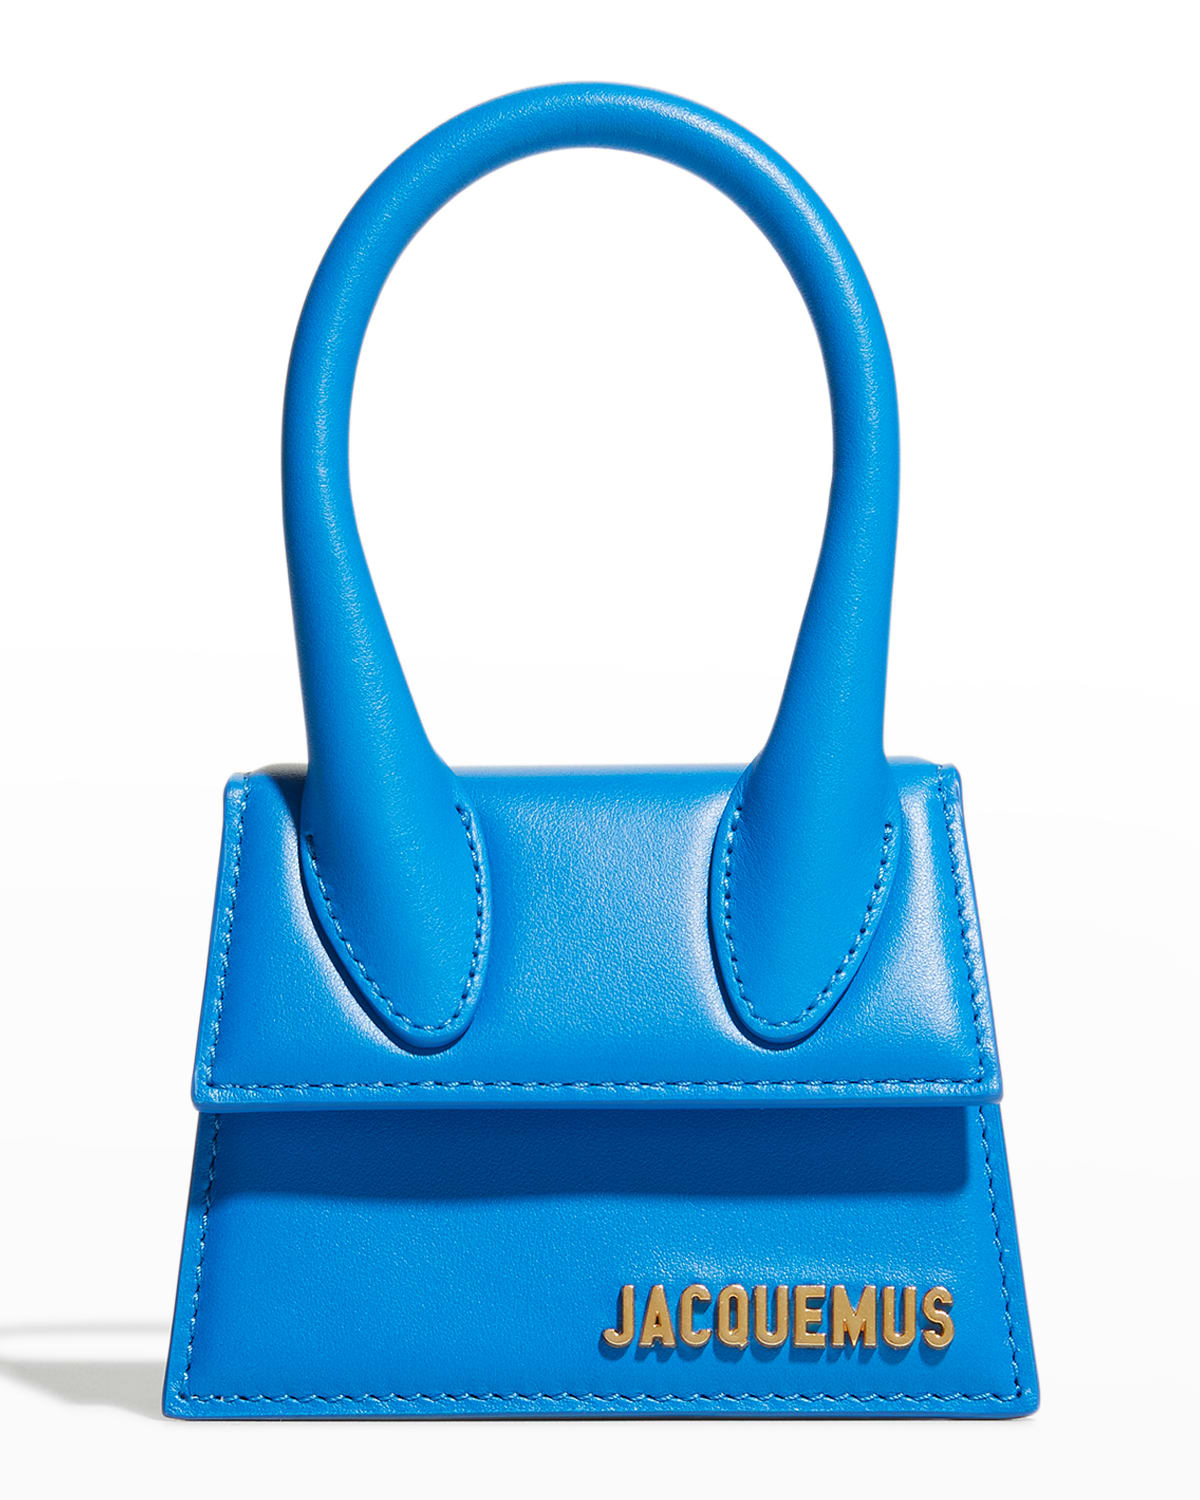 Jacquemus Le Chiquito Mini Satchel Bag In 330 Blue